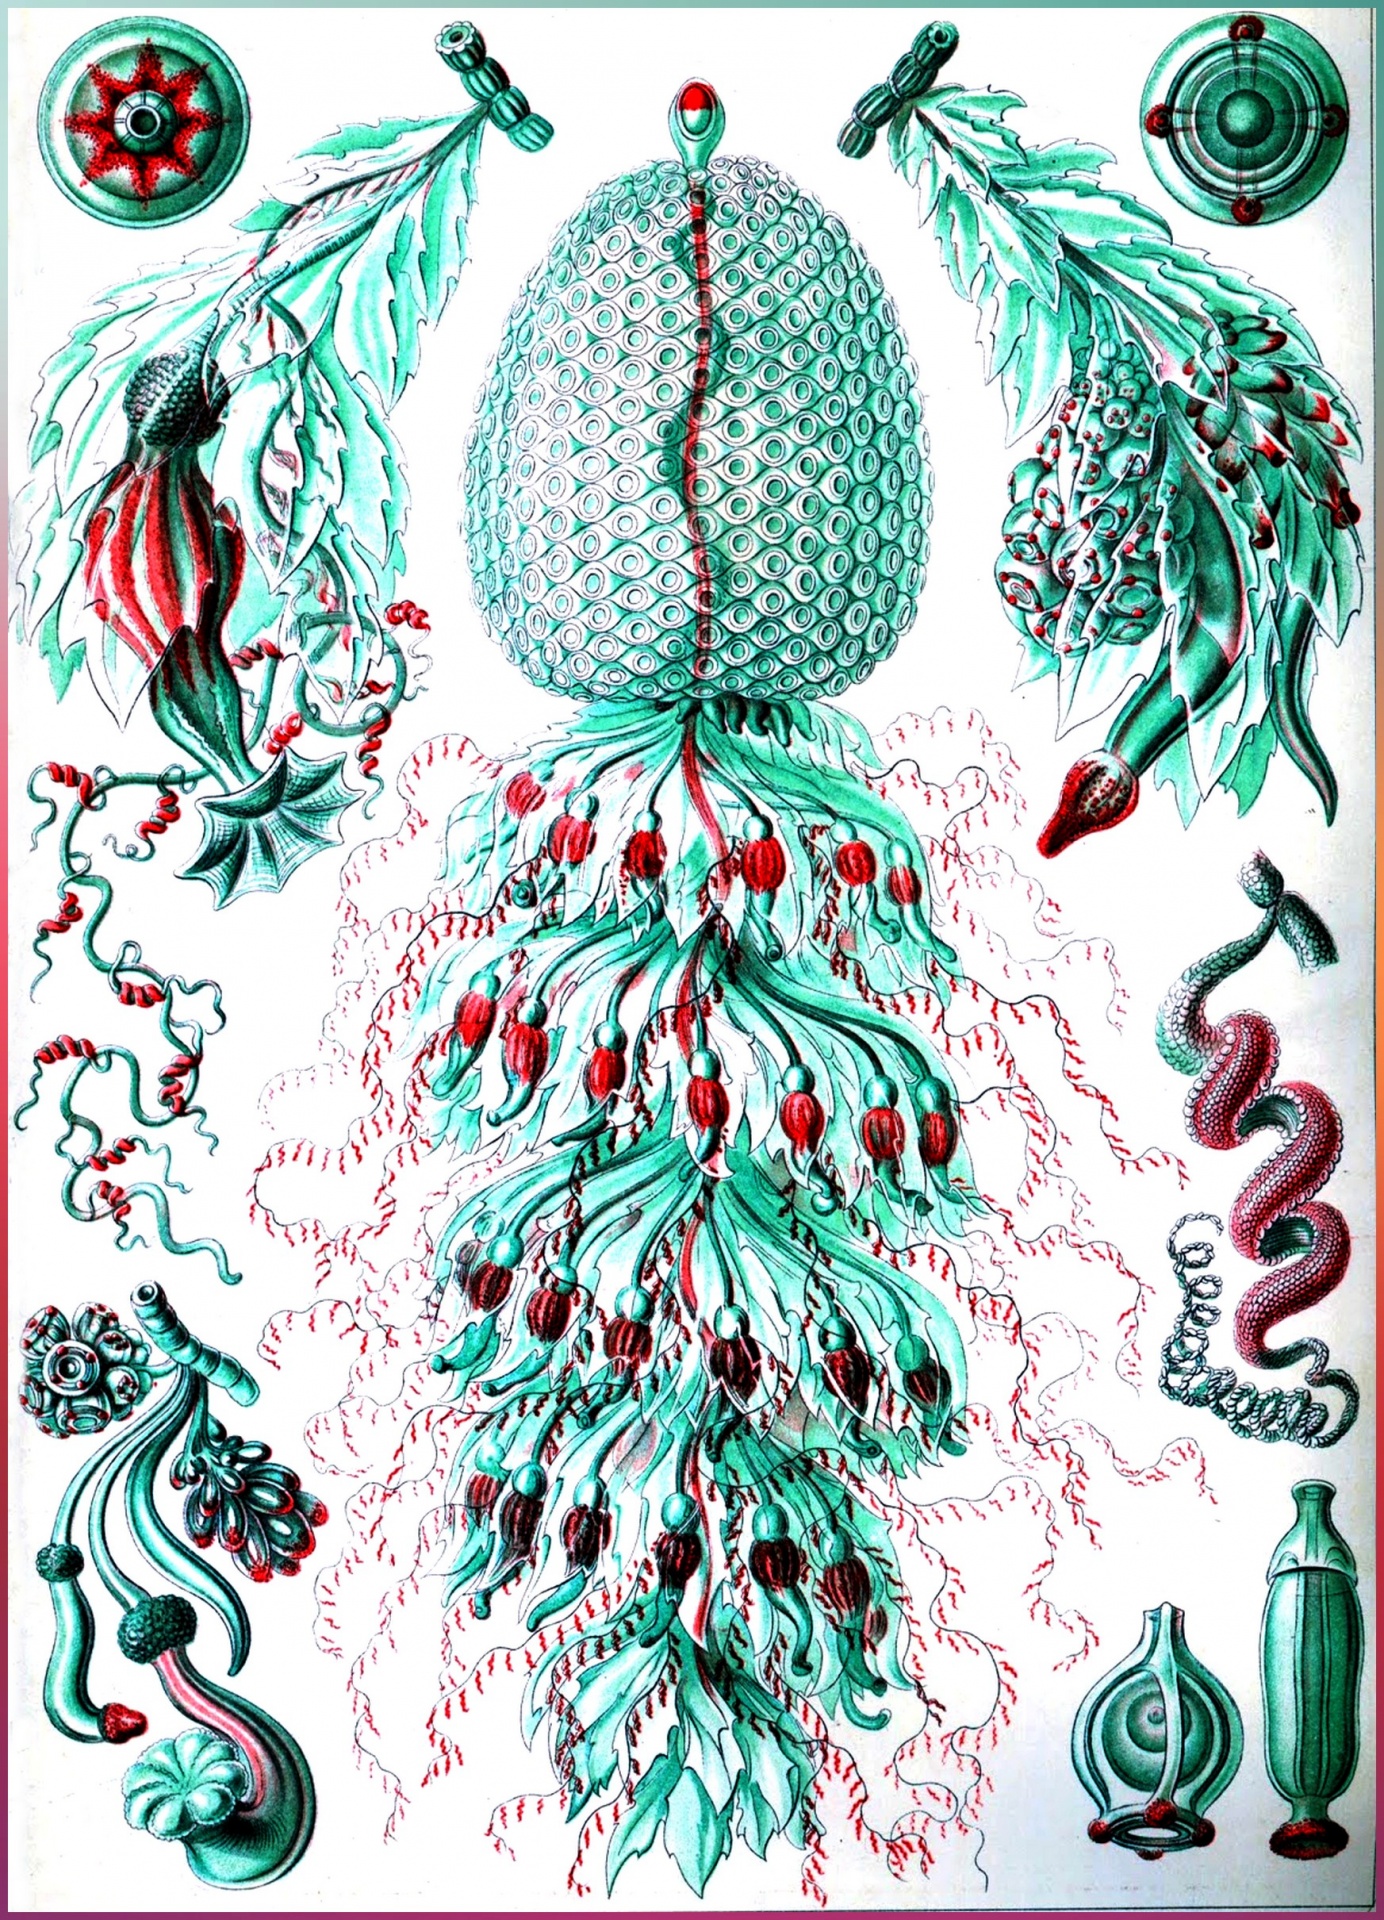 Drawing By Ernst Heinrich Haeckel 2